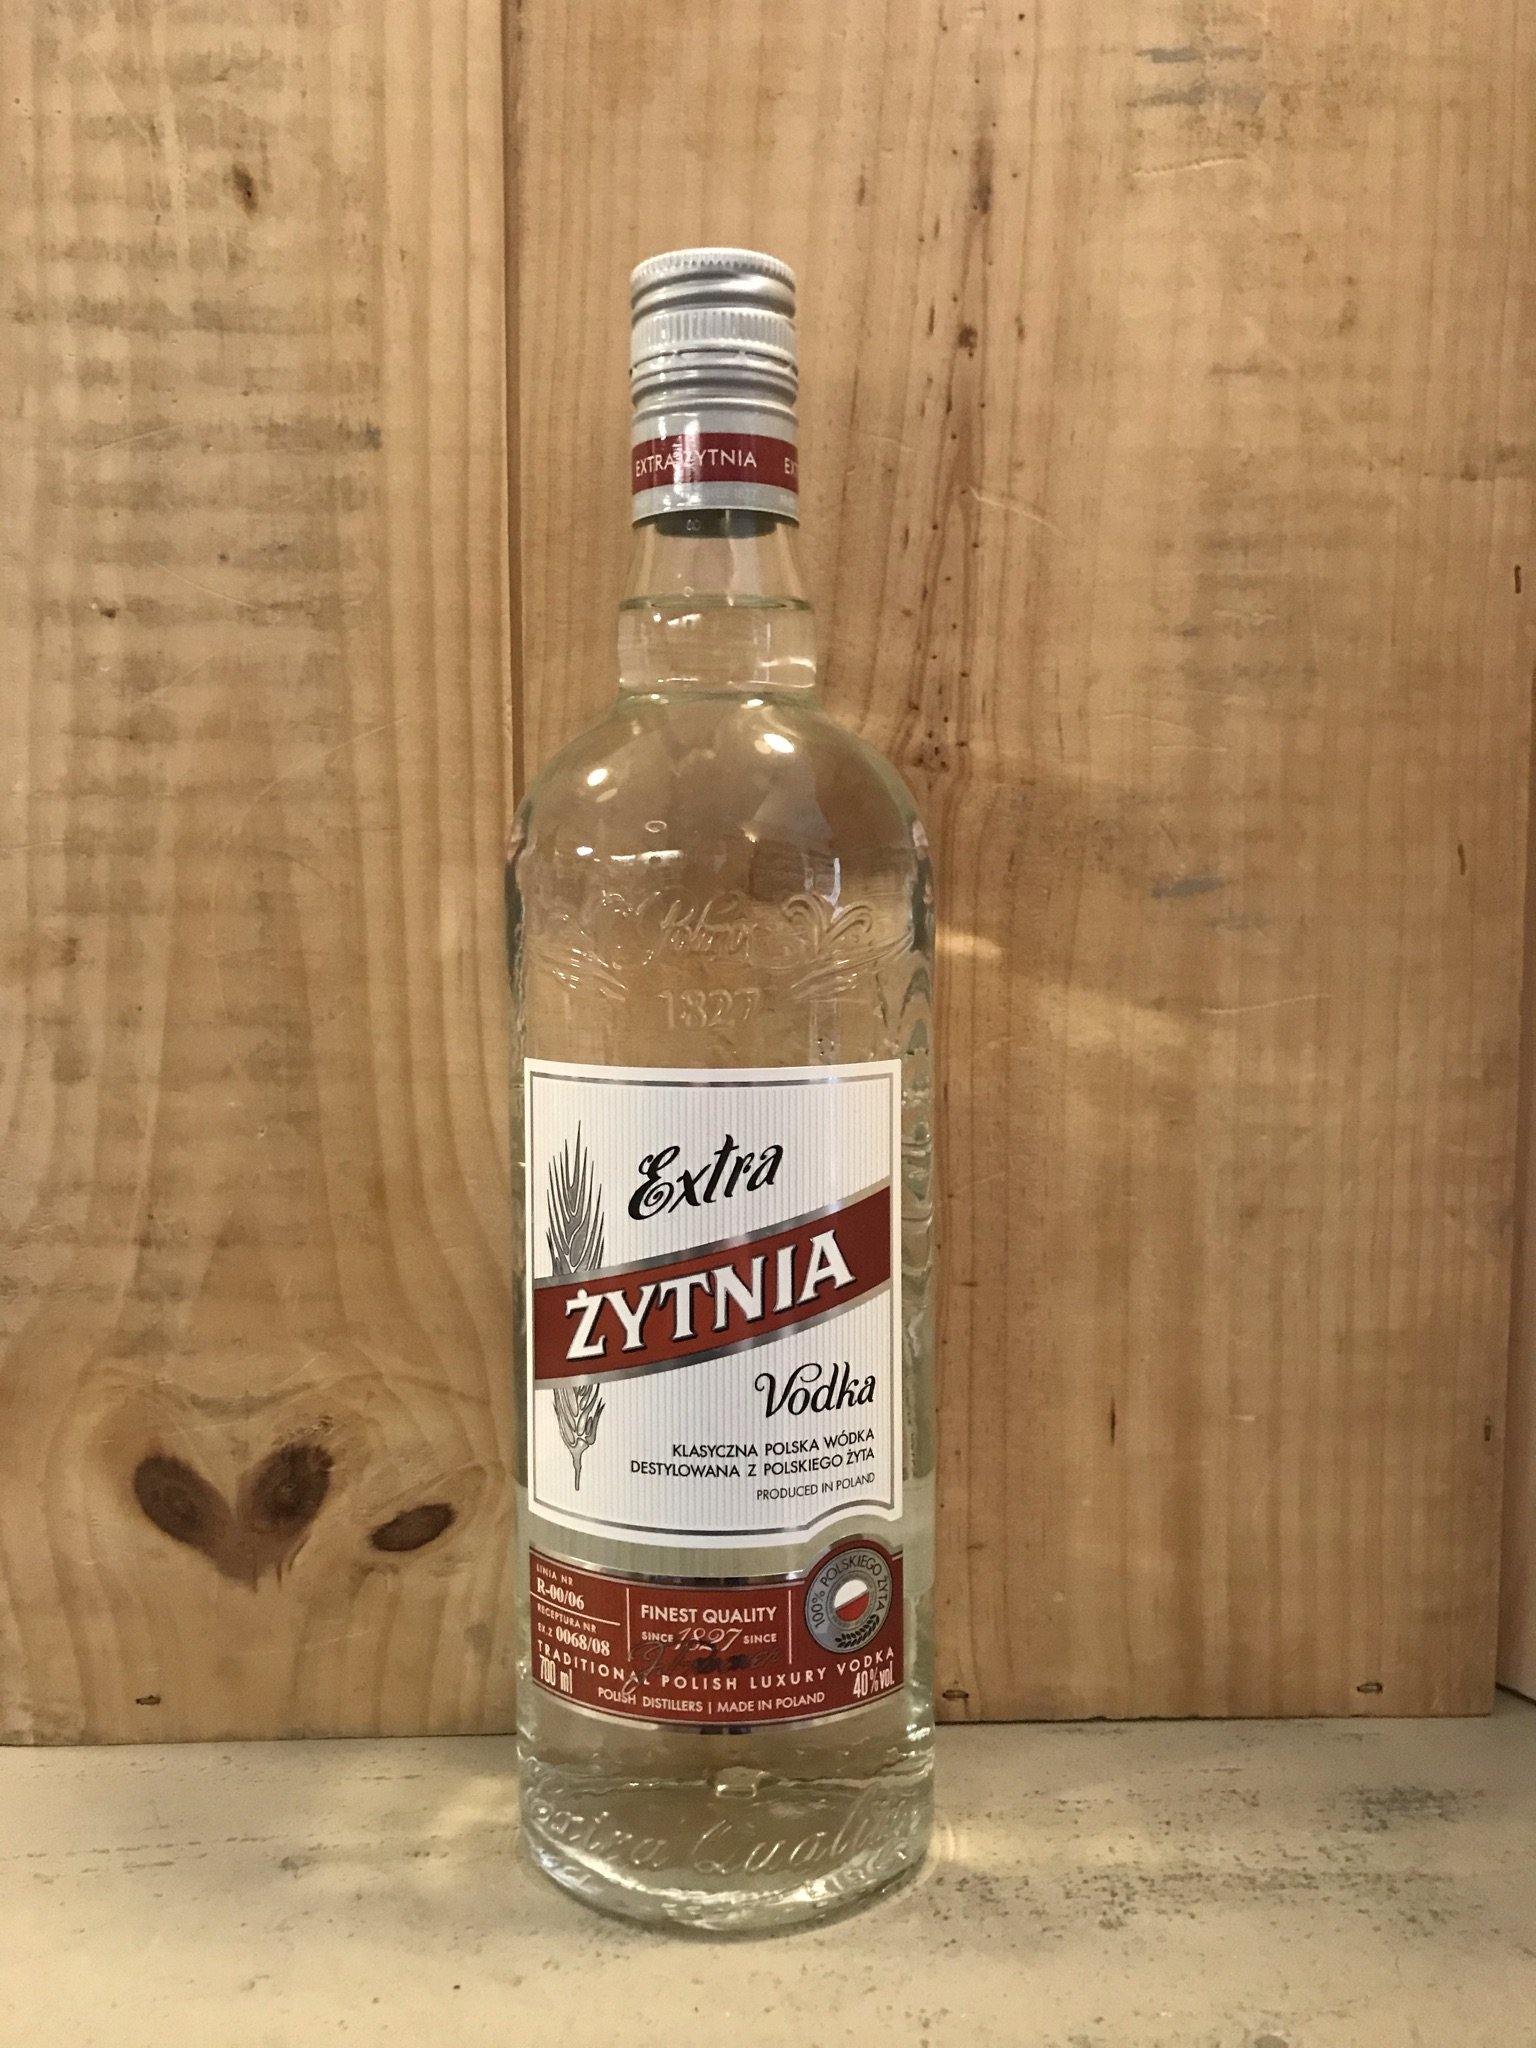 Vodka polonaise - tout ce que vous devez savoir - les meilleures